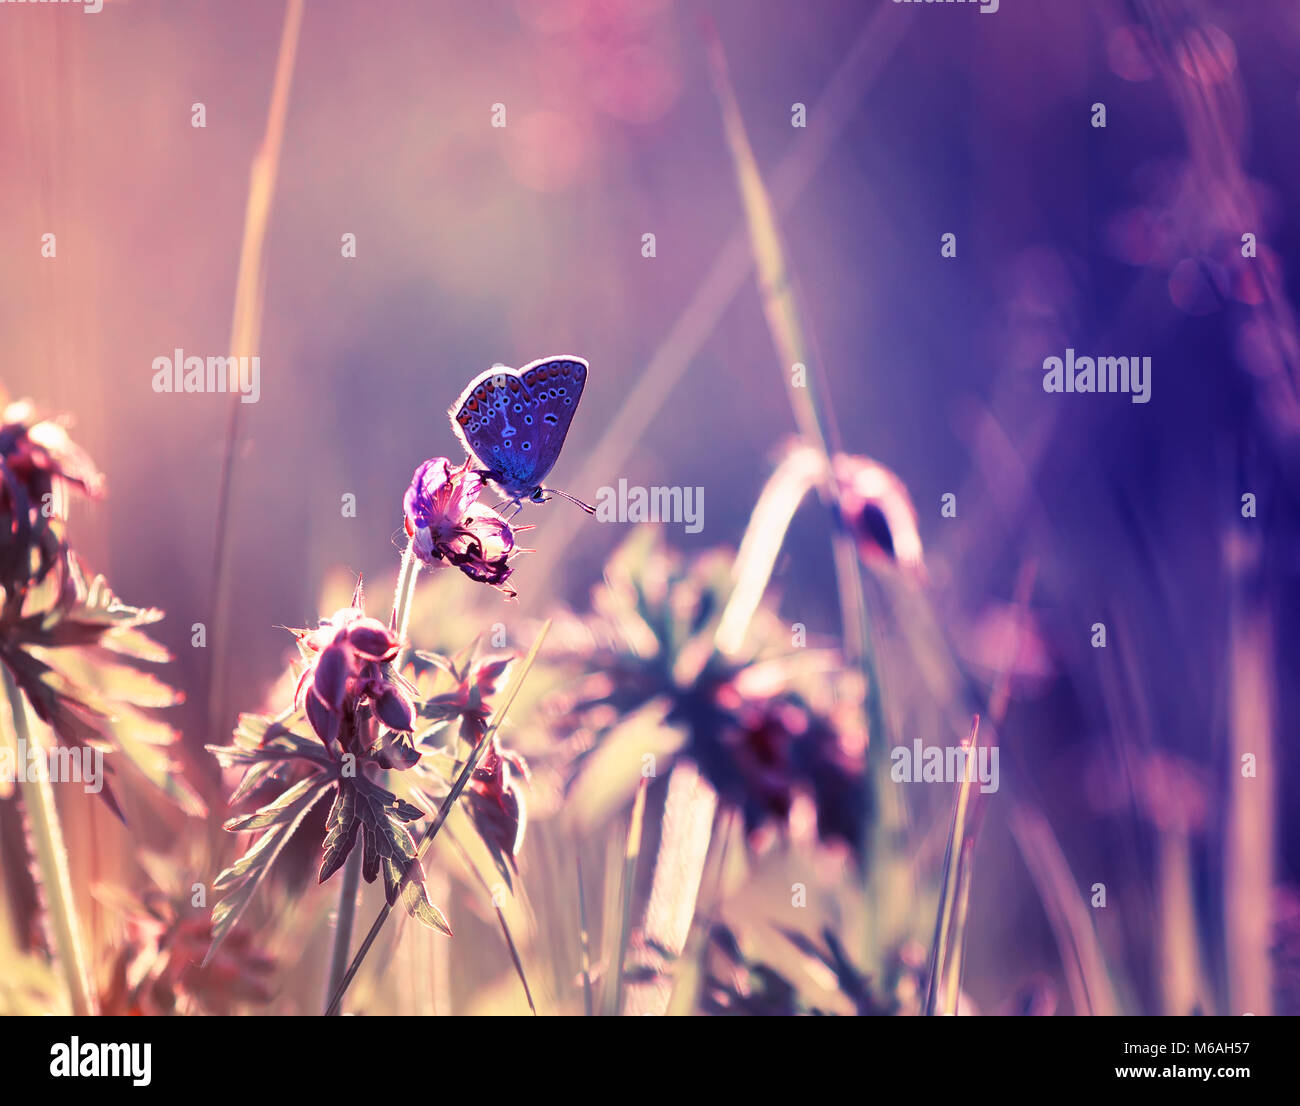 Süße kleine blaue Schmetterling sitzt auf einem heiklen und schönen Fee lila Wiese Stockfoto